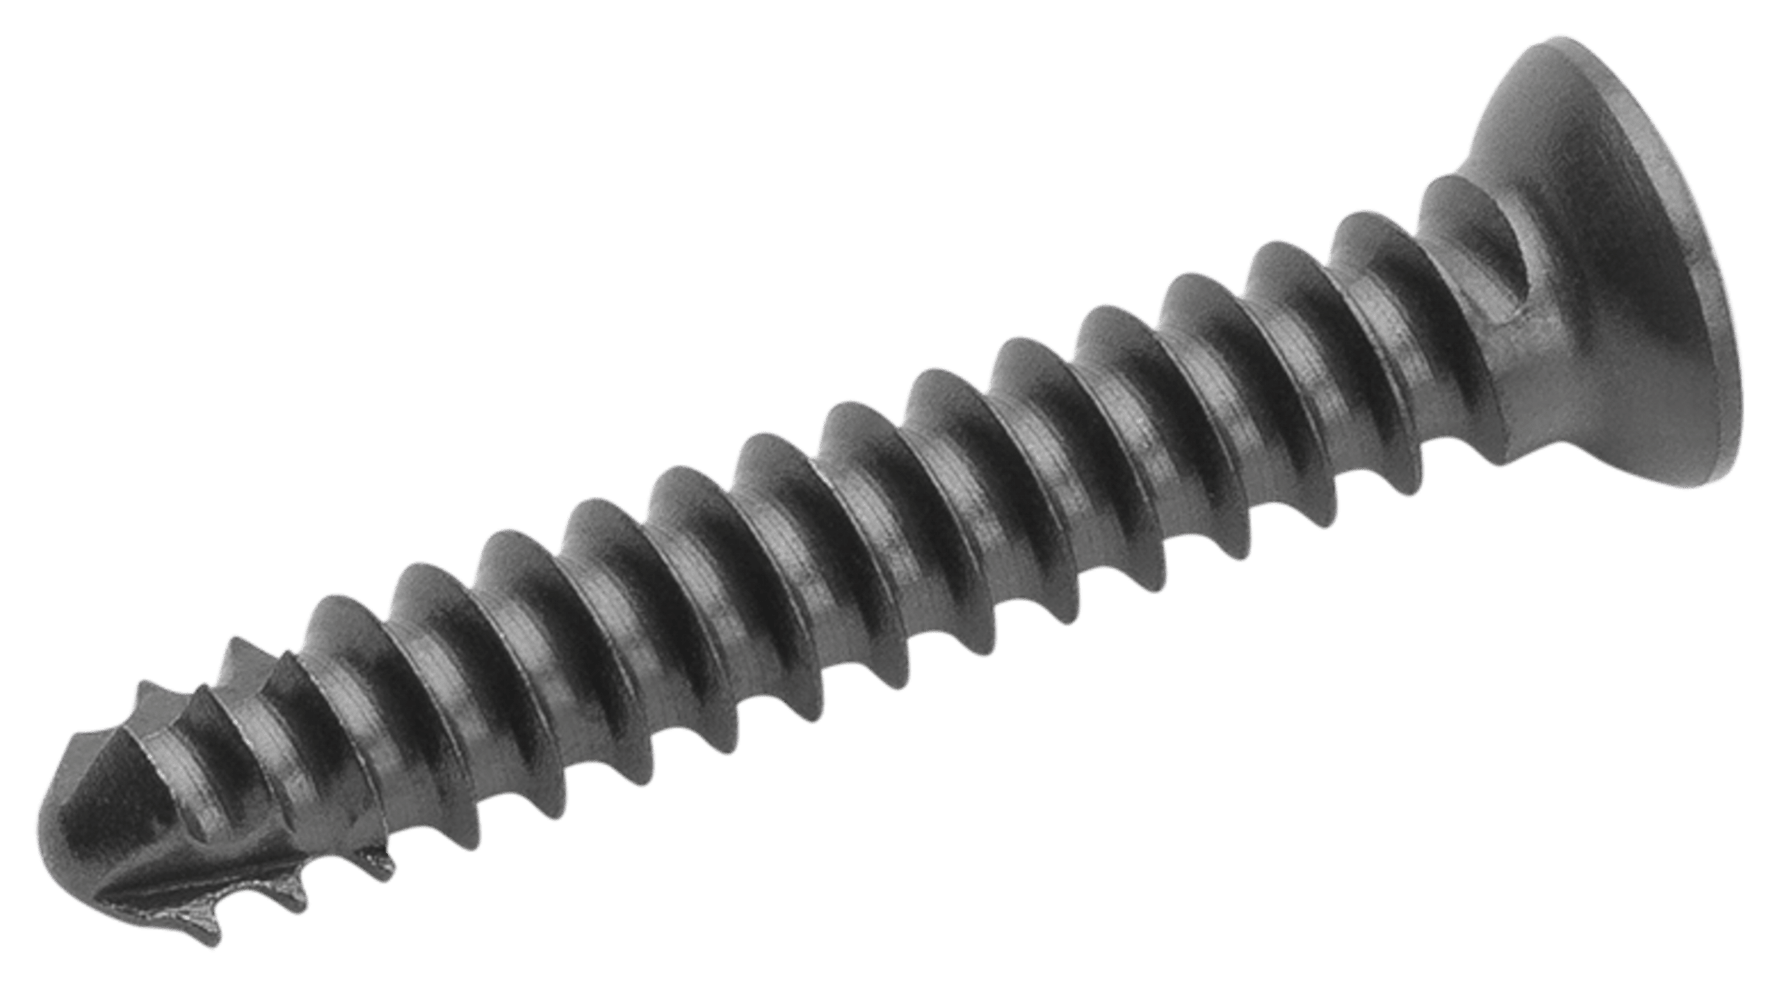 Cortical Screw, 2.0 mm x 9 mm